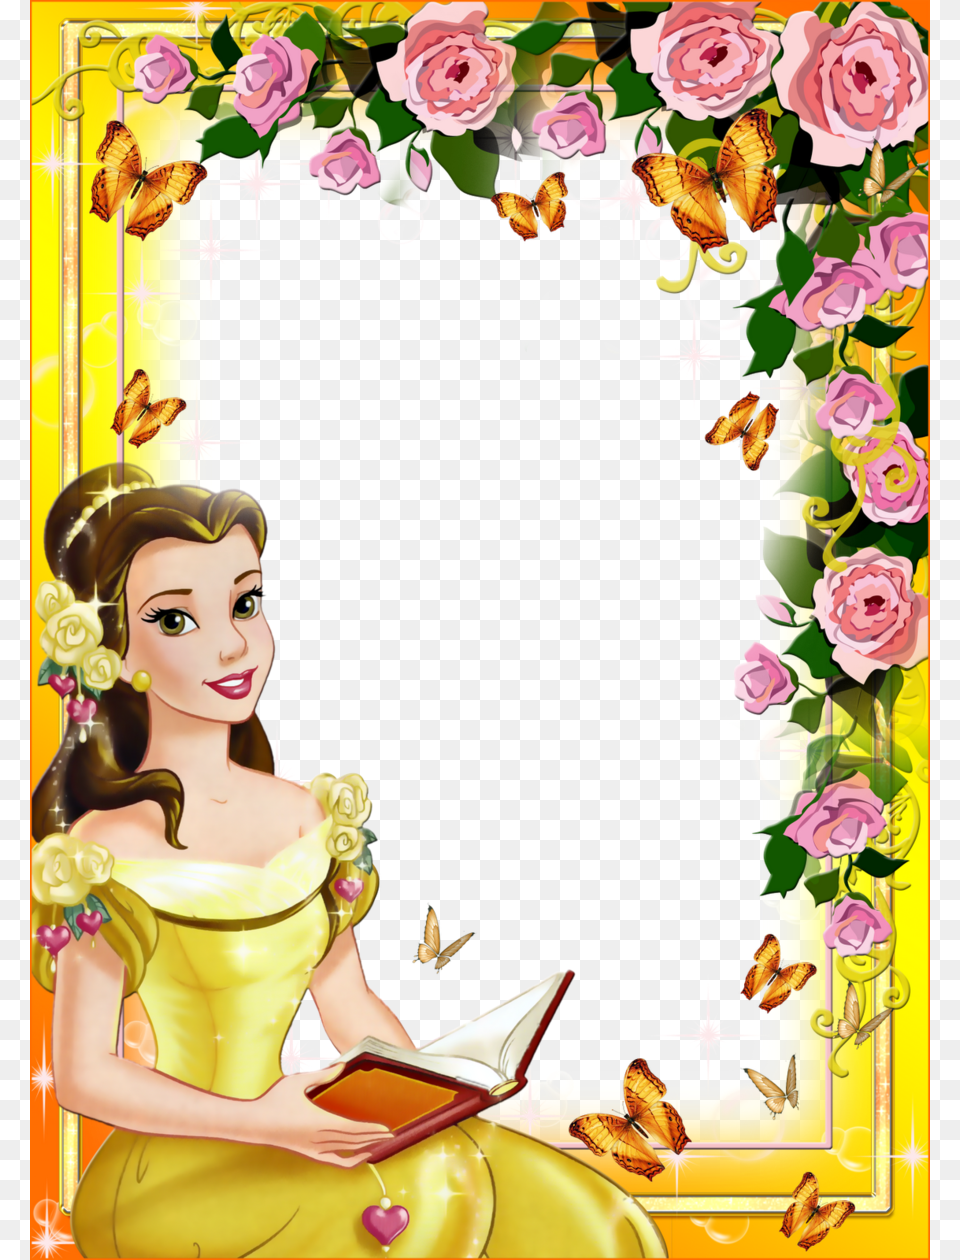 Disney Princess Belle Clipart Belle Princess Aurora Caratulas De Princesas Para Cuadernos, Graphics, Art, Wedding, Person Png Image